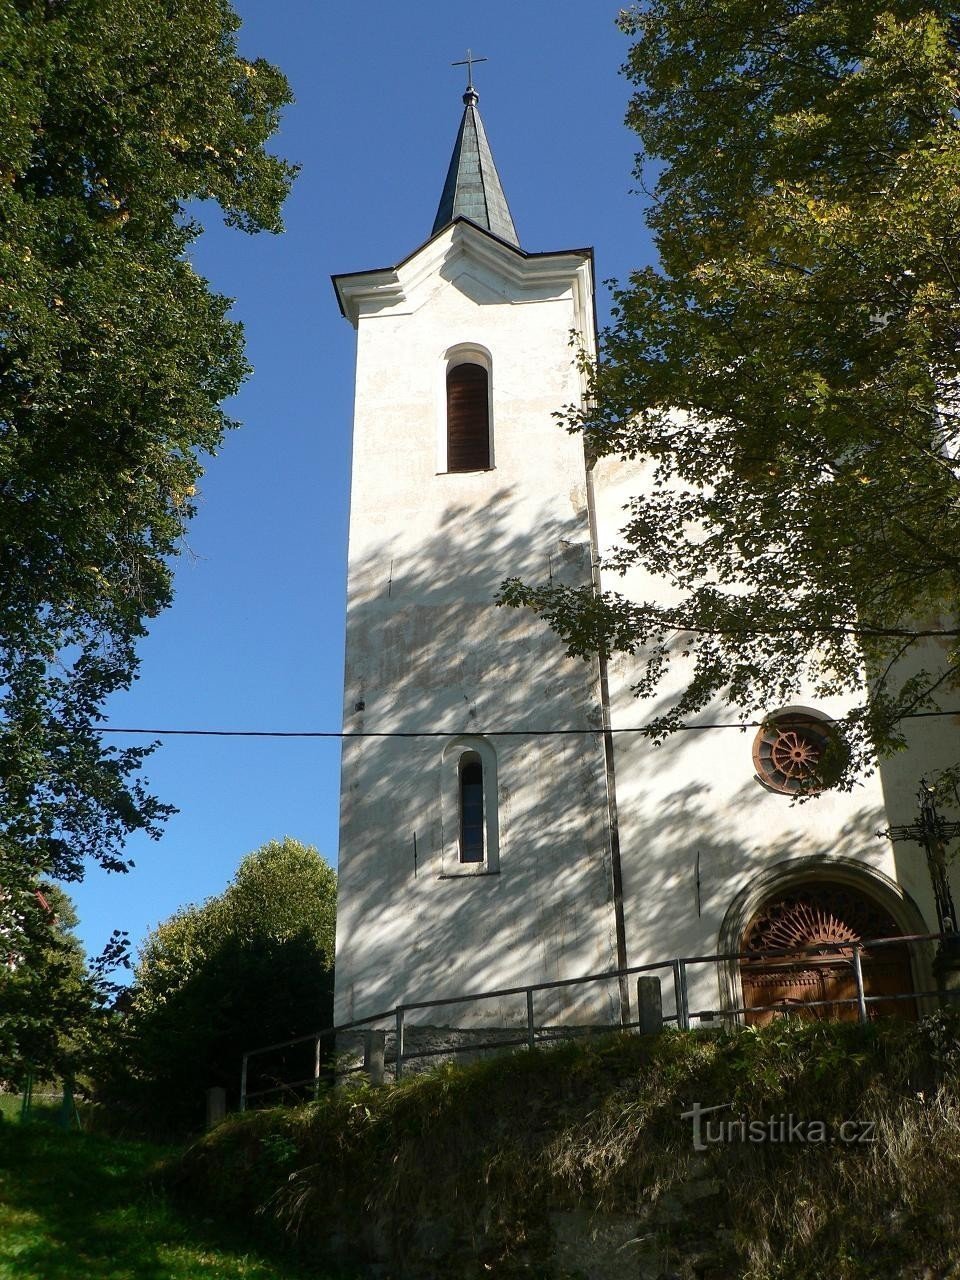 Ο πύργος της εκκλησίας του P. Marie Sněžné, Kašperské Hory